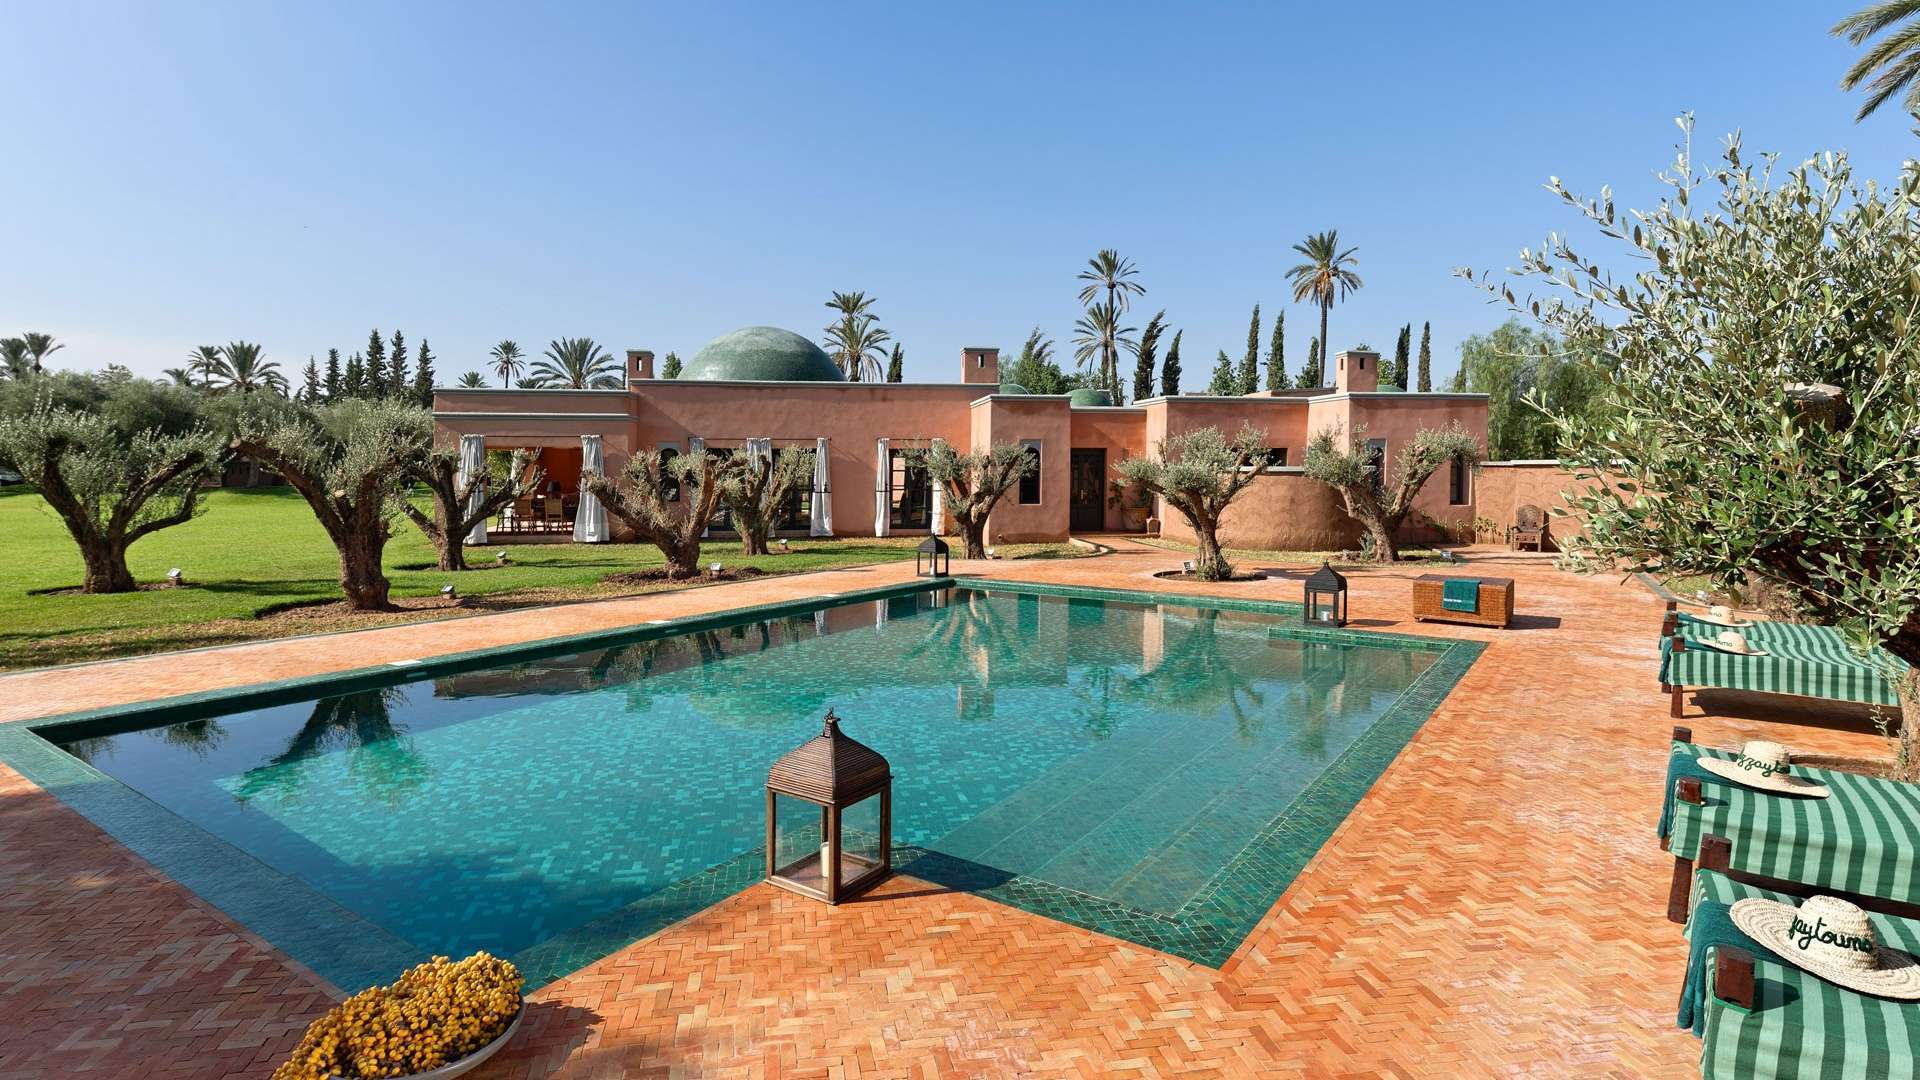 Location de vacances,Villa,Luxueuse villa de 3 ch dans un cadre exceptionnel à la Palmeraie de Marrakech,Marrakech,Palmeraie